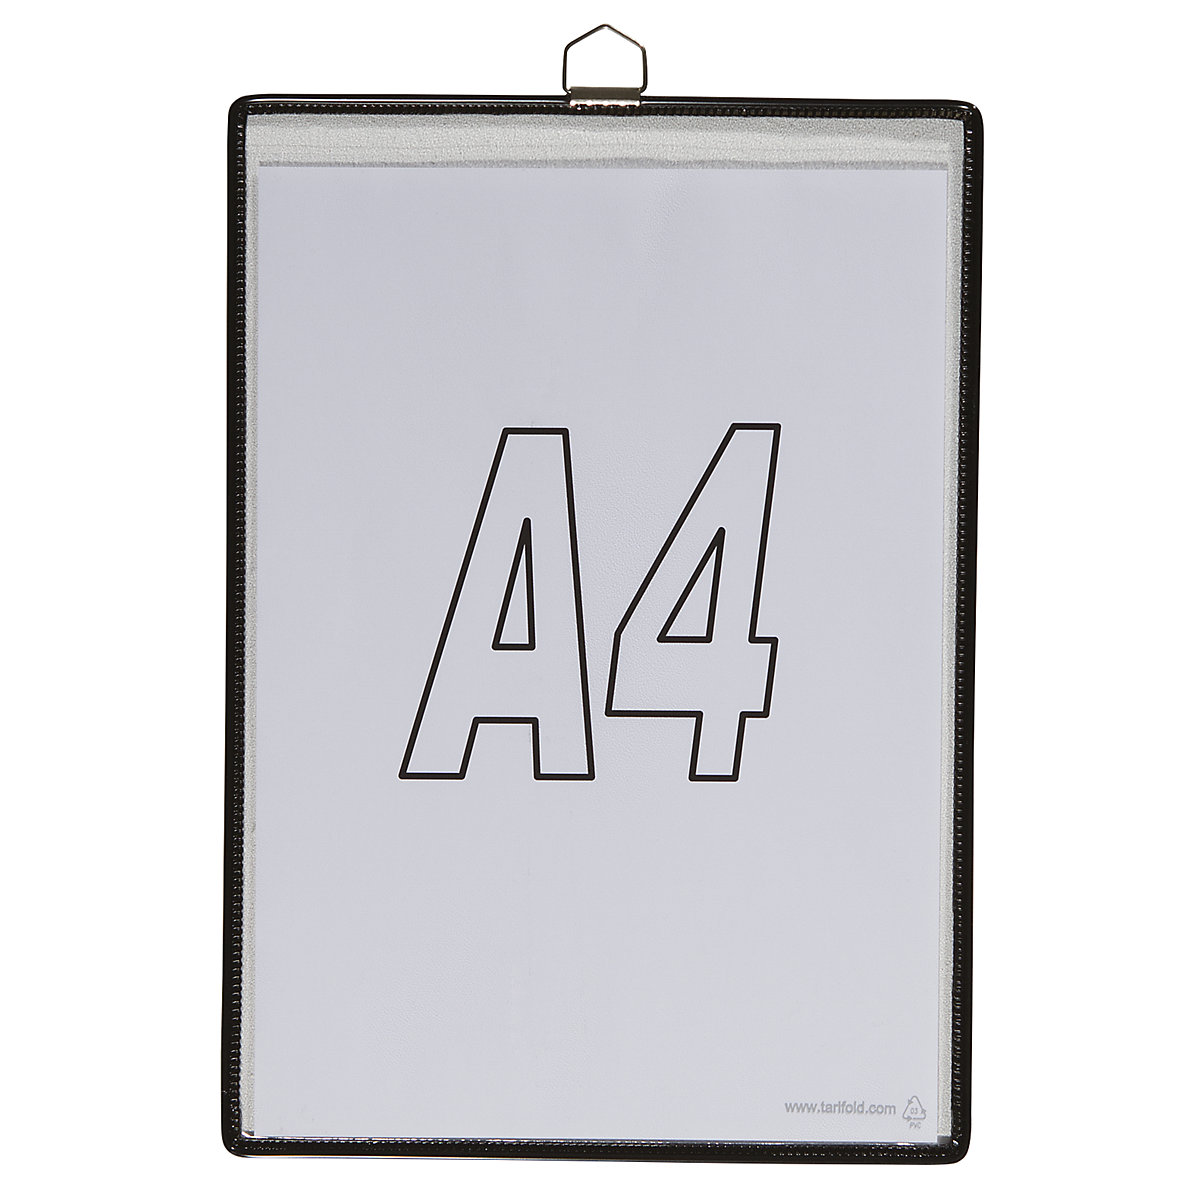 Hänge-Klarsichttasche Tarifold, für Format DIN A4, schwarz, VE 10 Stk